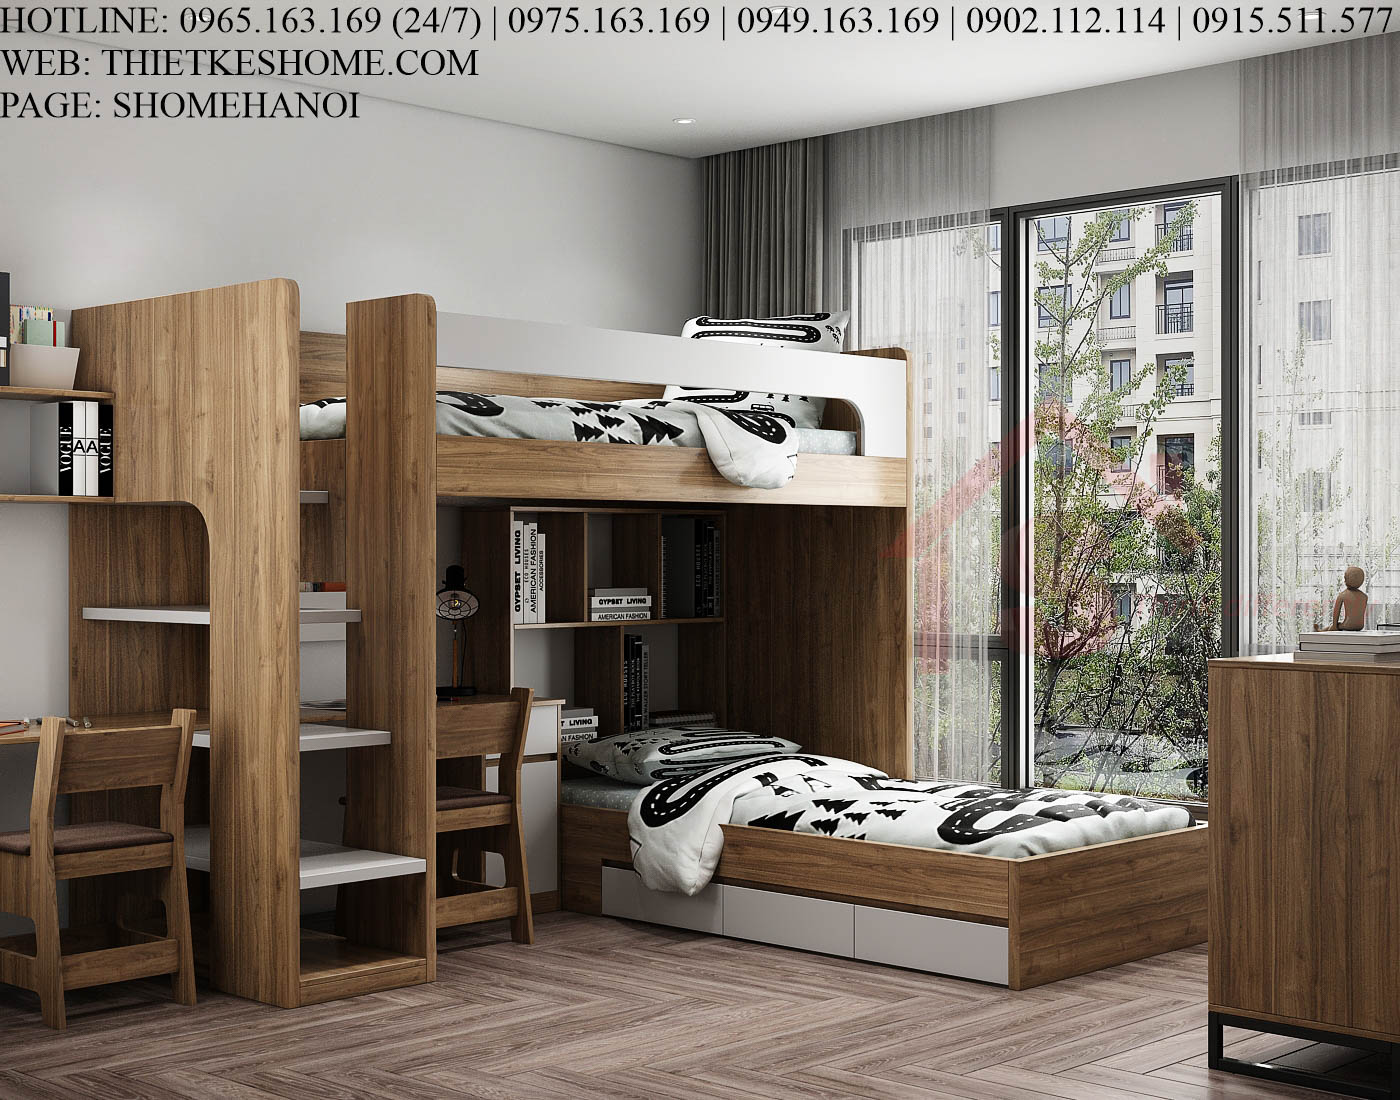 S HOME Combo mẫu nội thất phòng ngủ cho bé đẹp hiện đại tiện dụng SHOME6822